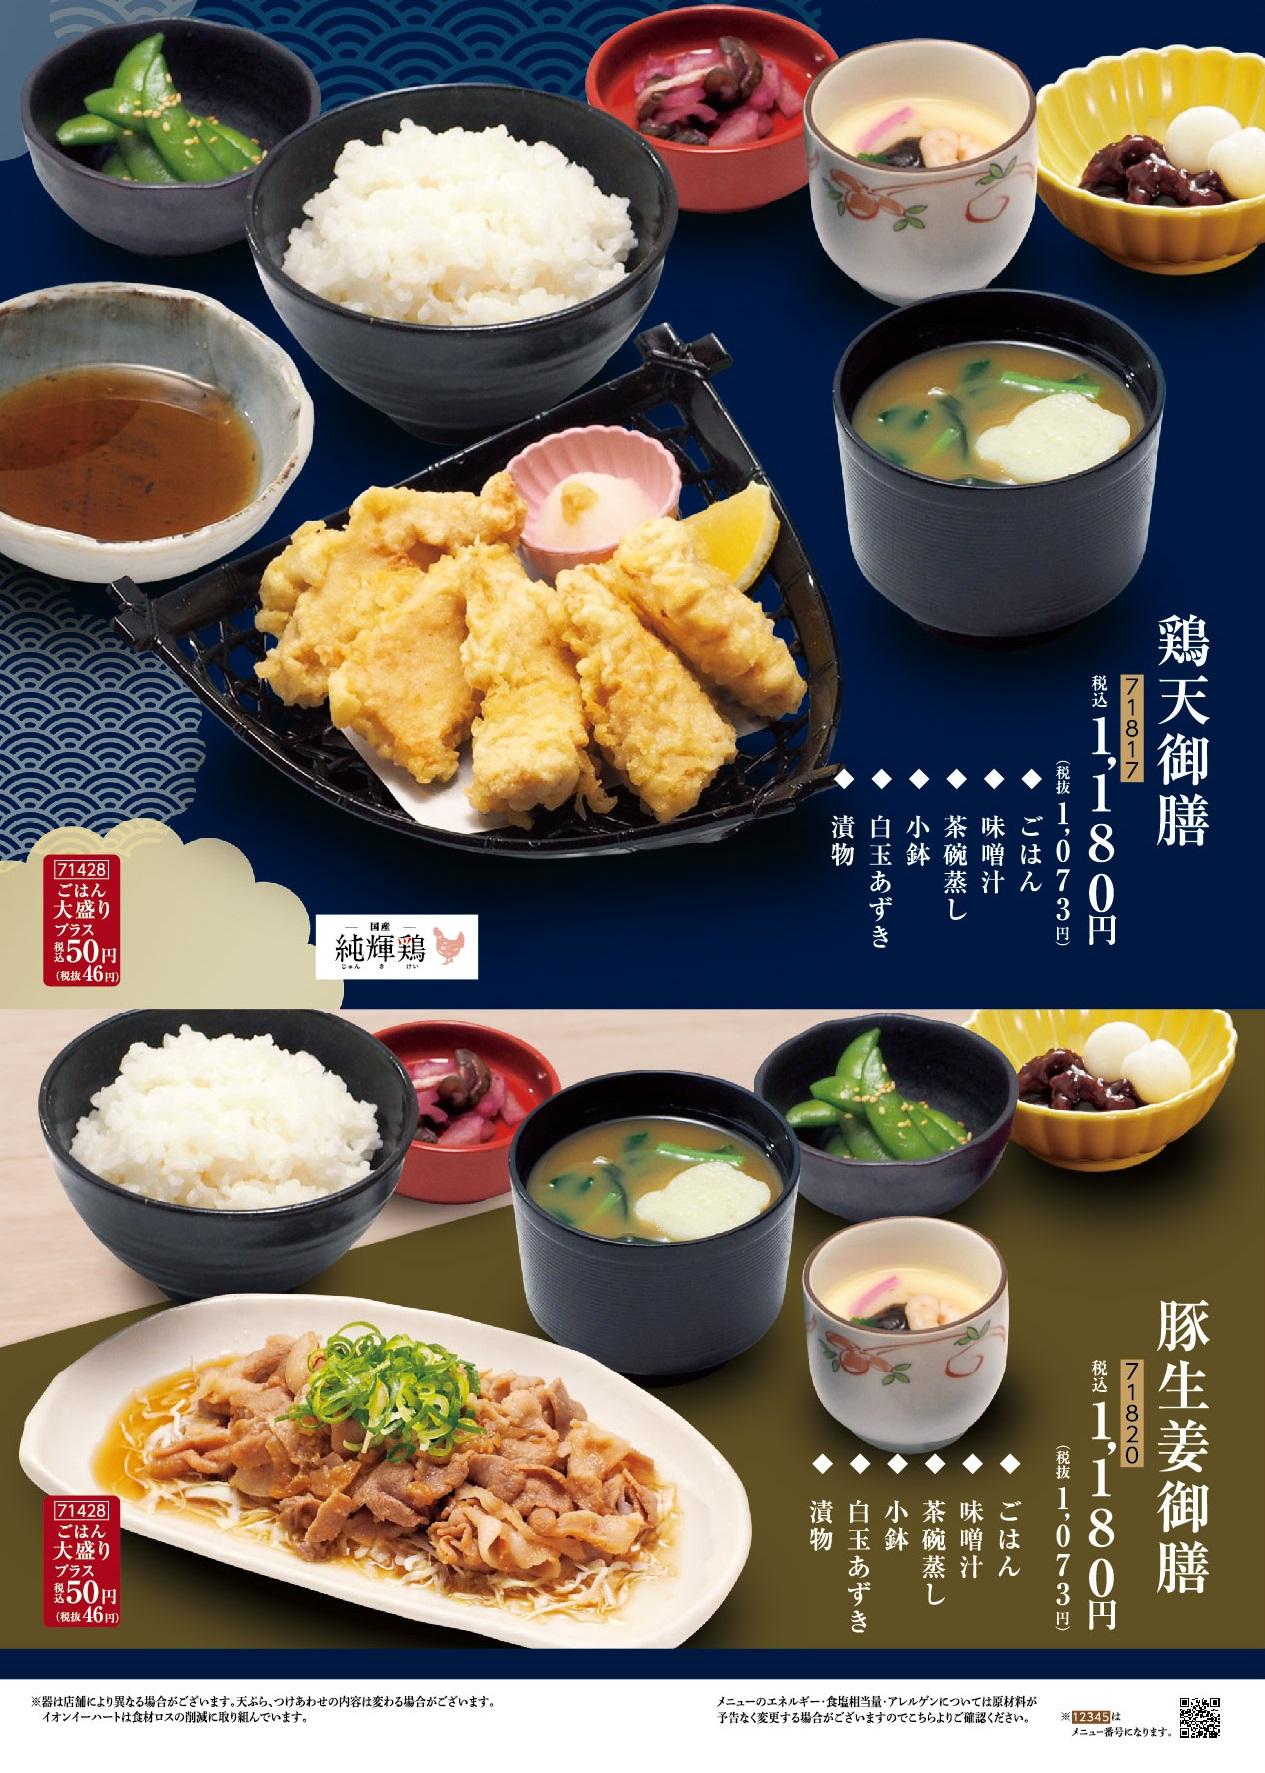 イオングランドメニュー「天ぷらが愉しめる総合和食のお店」タイプ メニュー